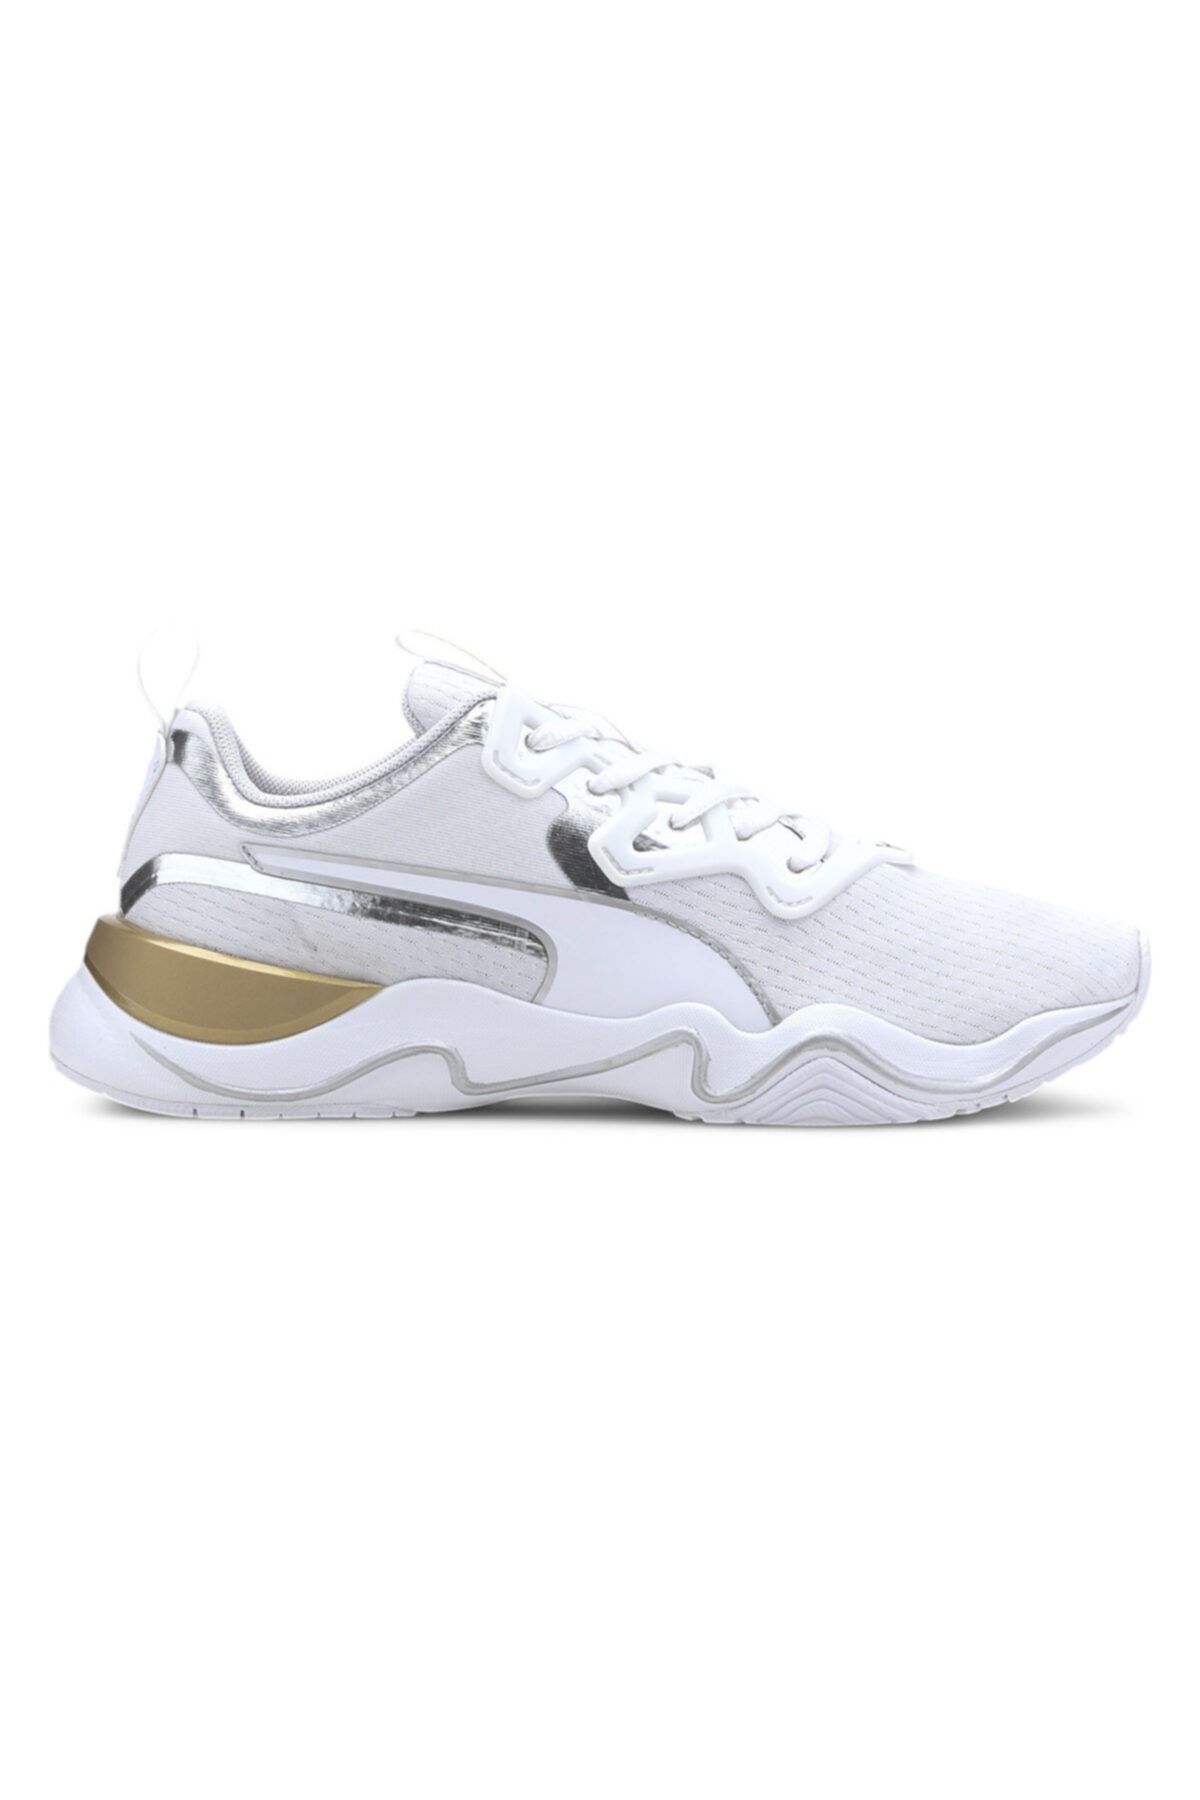 Puma ZONE XT METAL WN S Beyaz Kadın Sneaker Ayakkabı 101119136